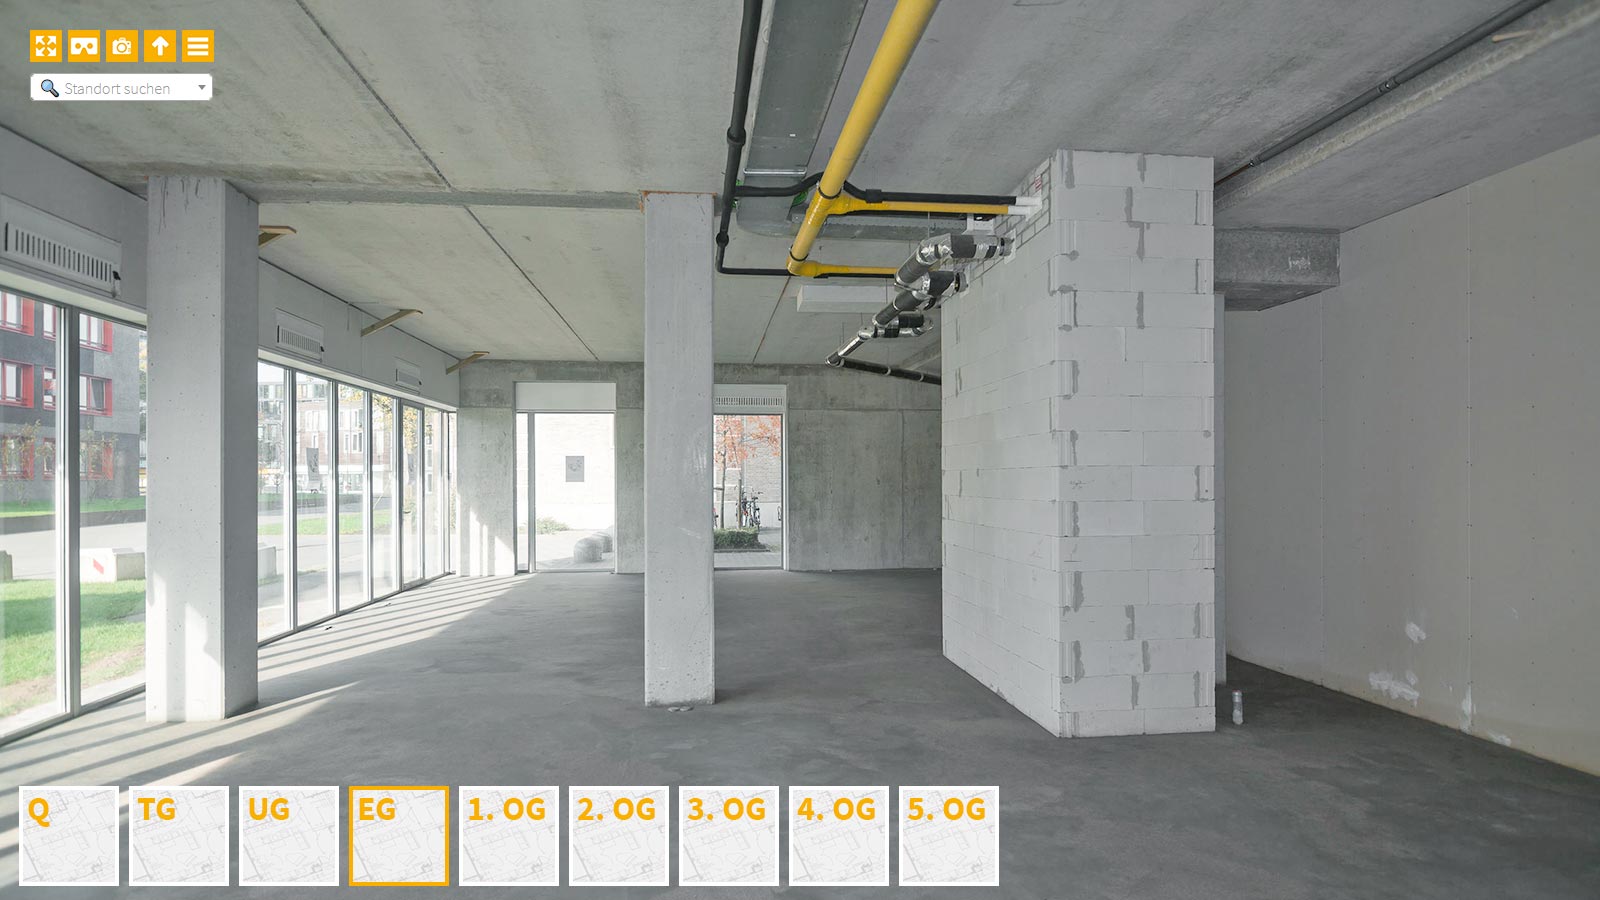 Baudokumentation 360 Grad bei gestörten Projekten in 


	


	


	


	


	


	


	


	


	


	Heidelberg









, Bilddokumentation als virtueller Rundgang